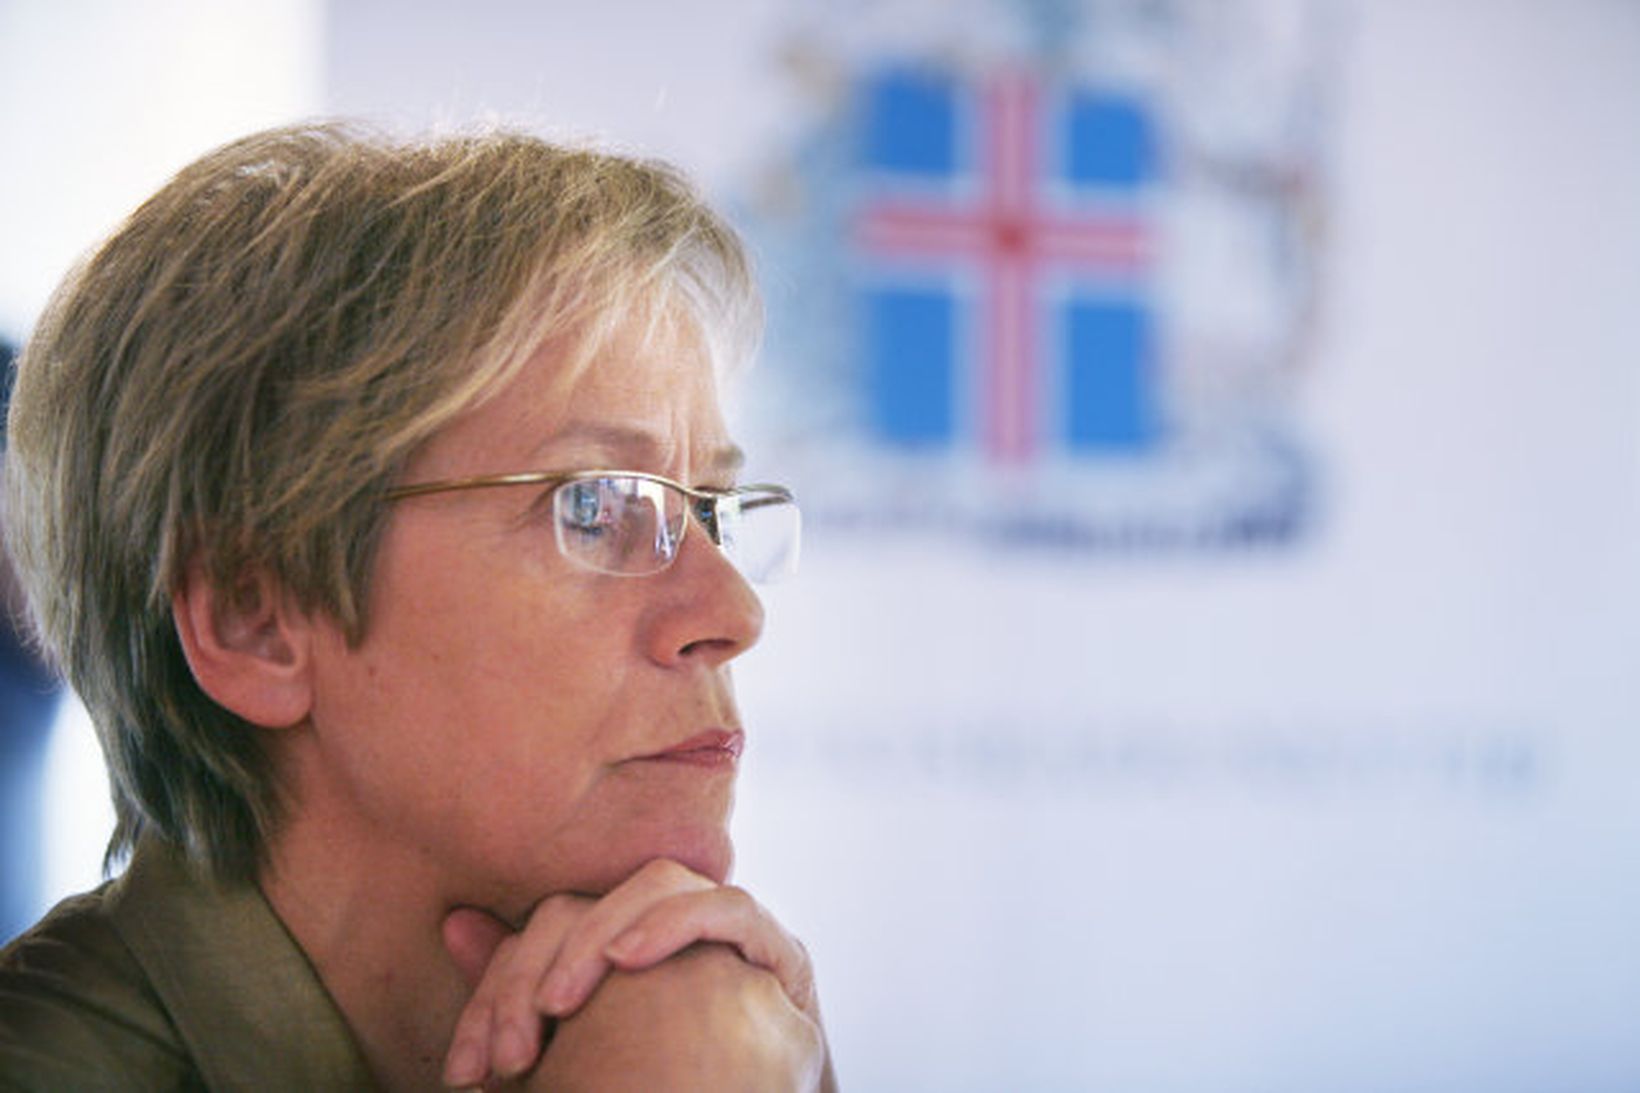 Ingibjörg Sólrún Gísladóttir